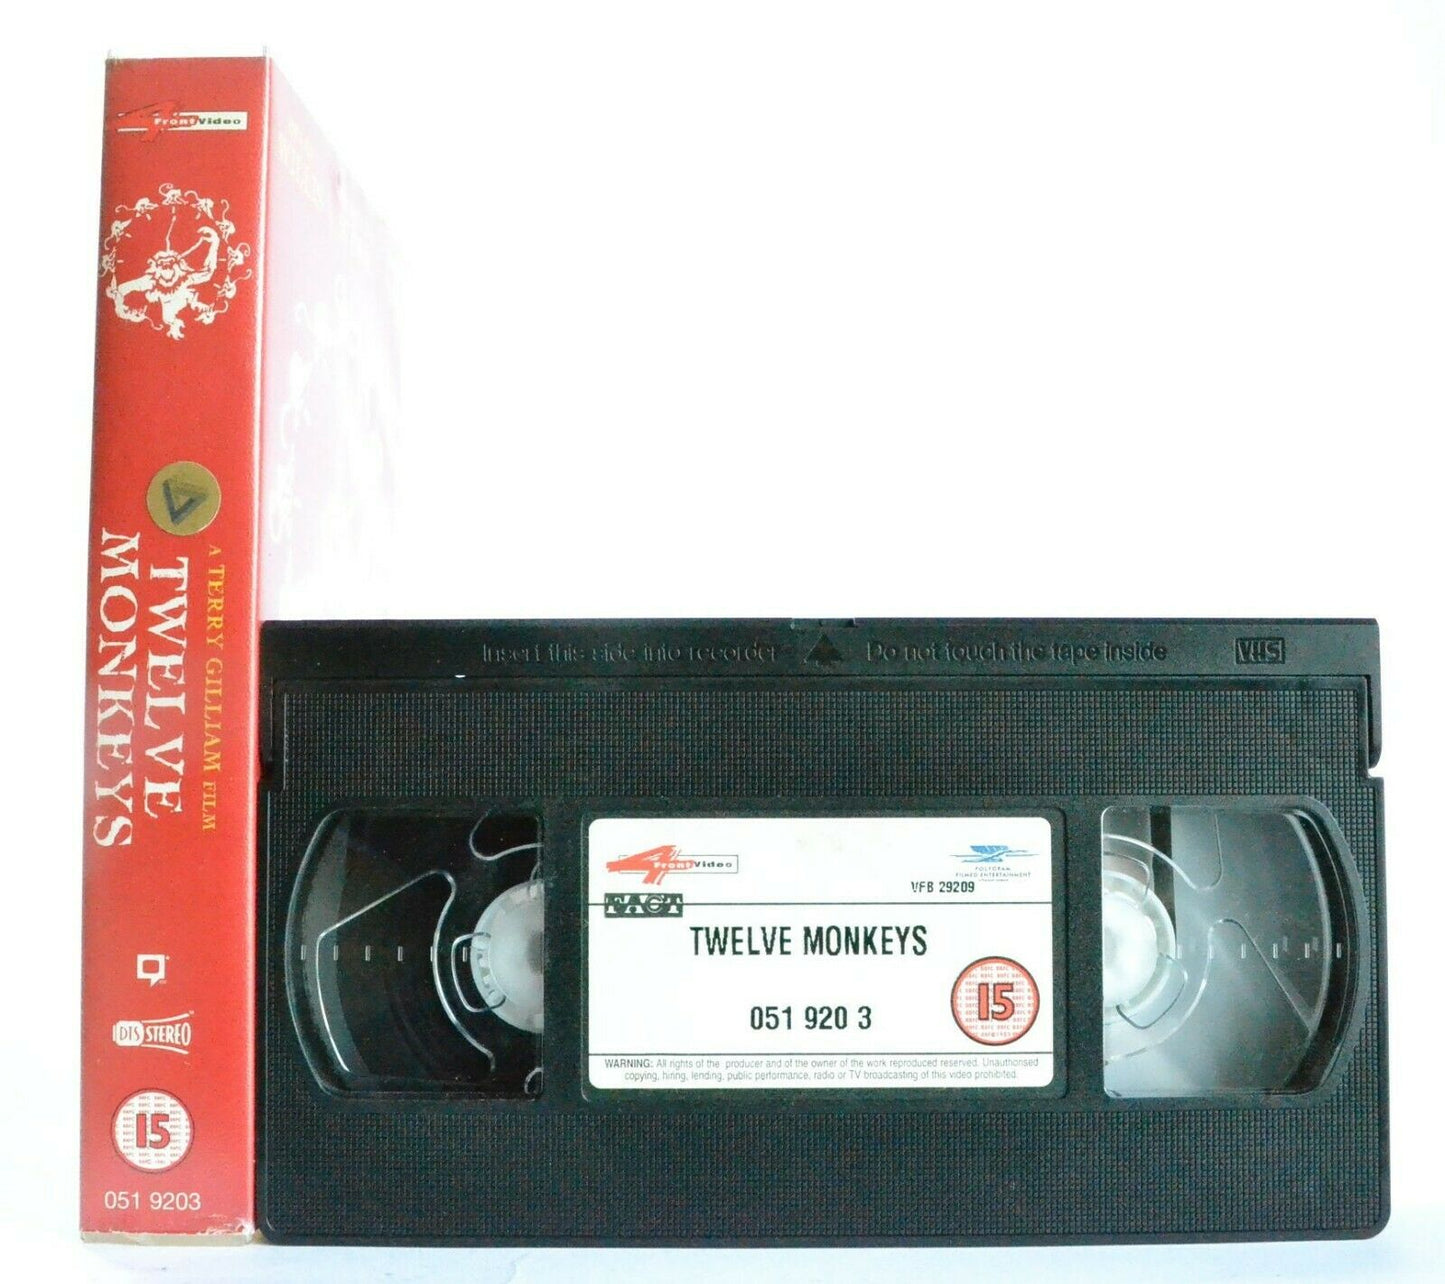 Twelve Monkeys: Time Travel - Bruce Willis - Brad Pitt - Action (1995) - VHS-